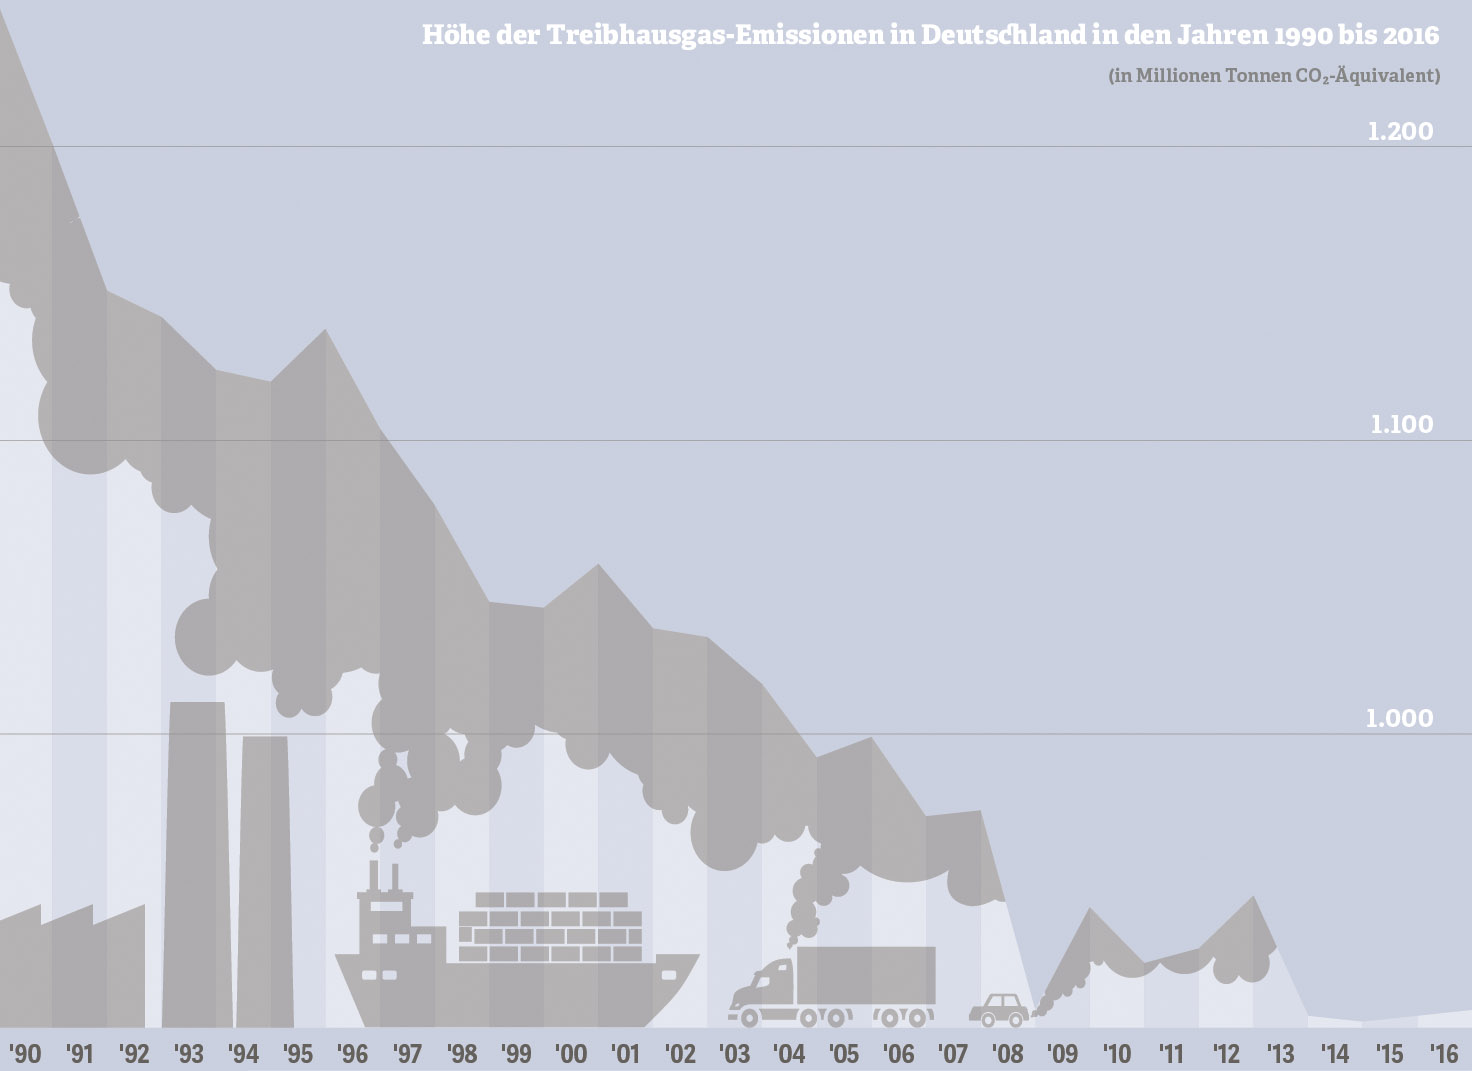  Grafik zur Höhe der Treibhausgas-Emissionen in Deutschland in den Jahren 1990 bis 2016